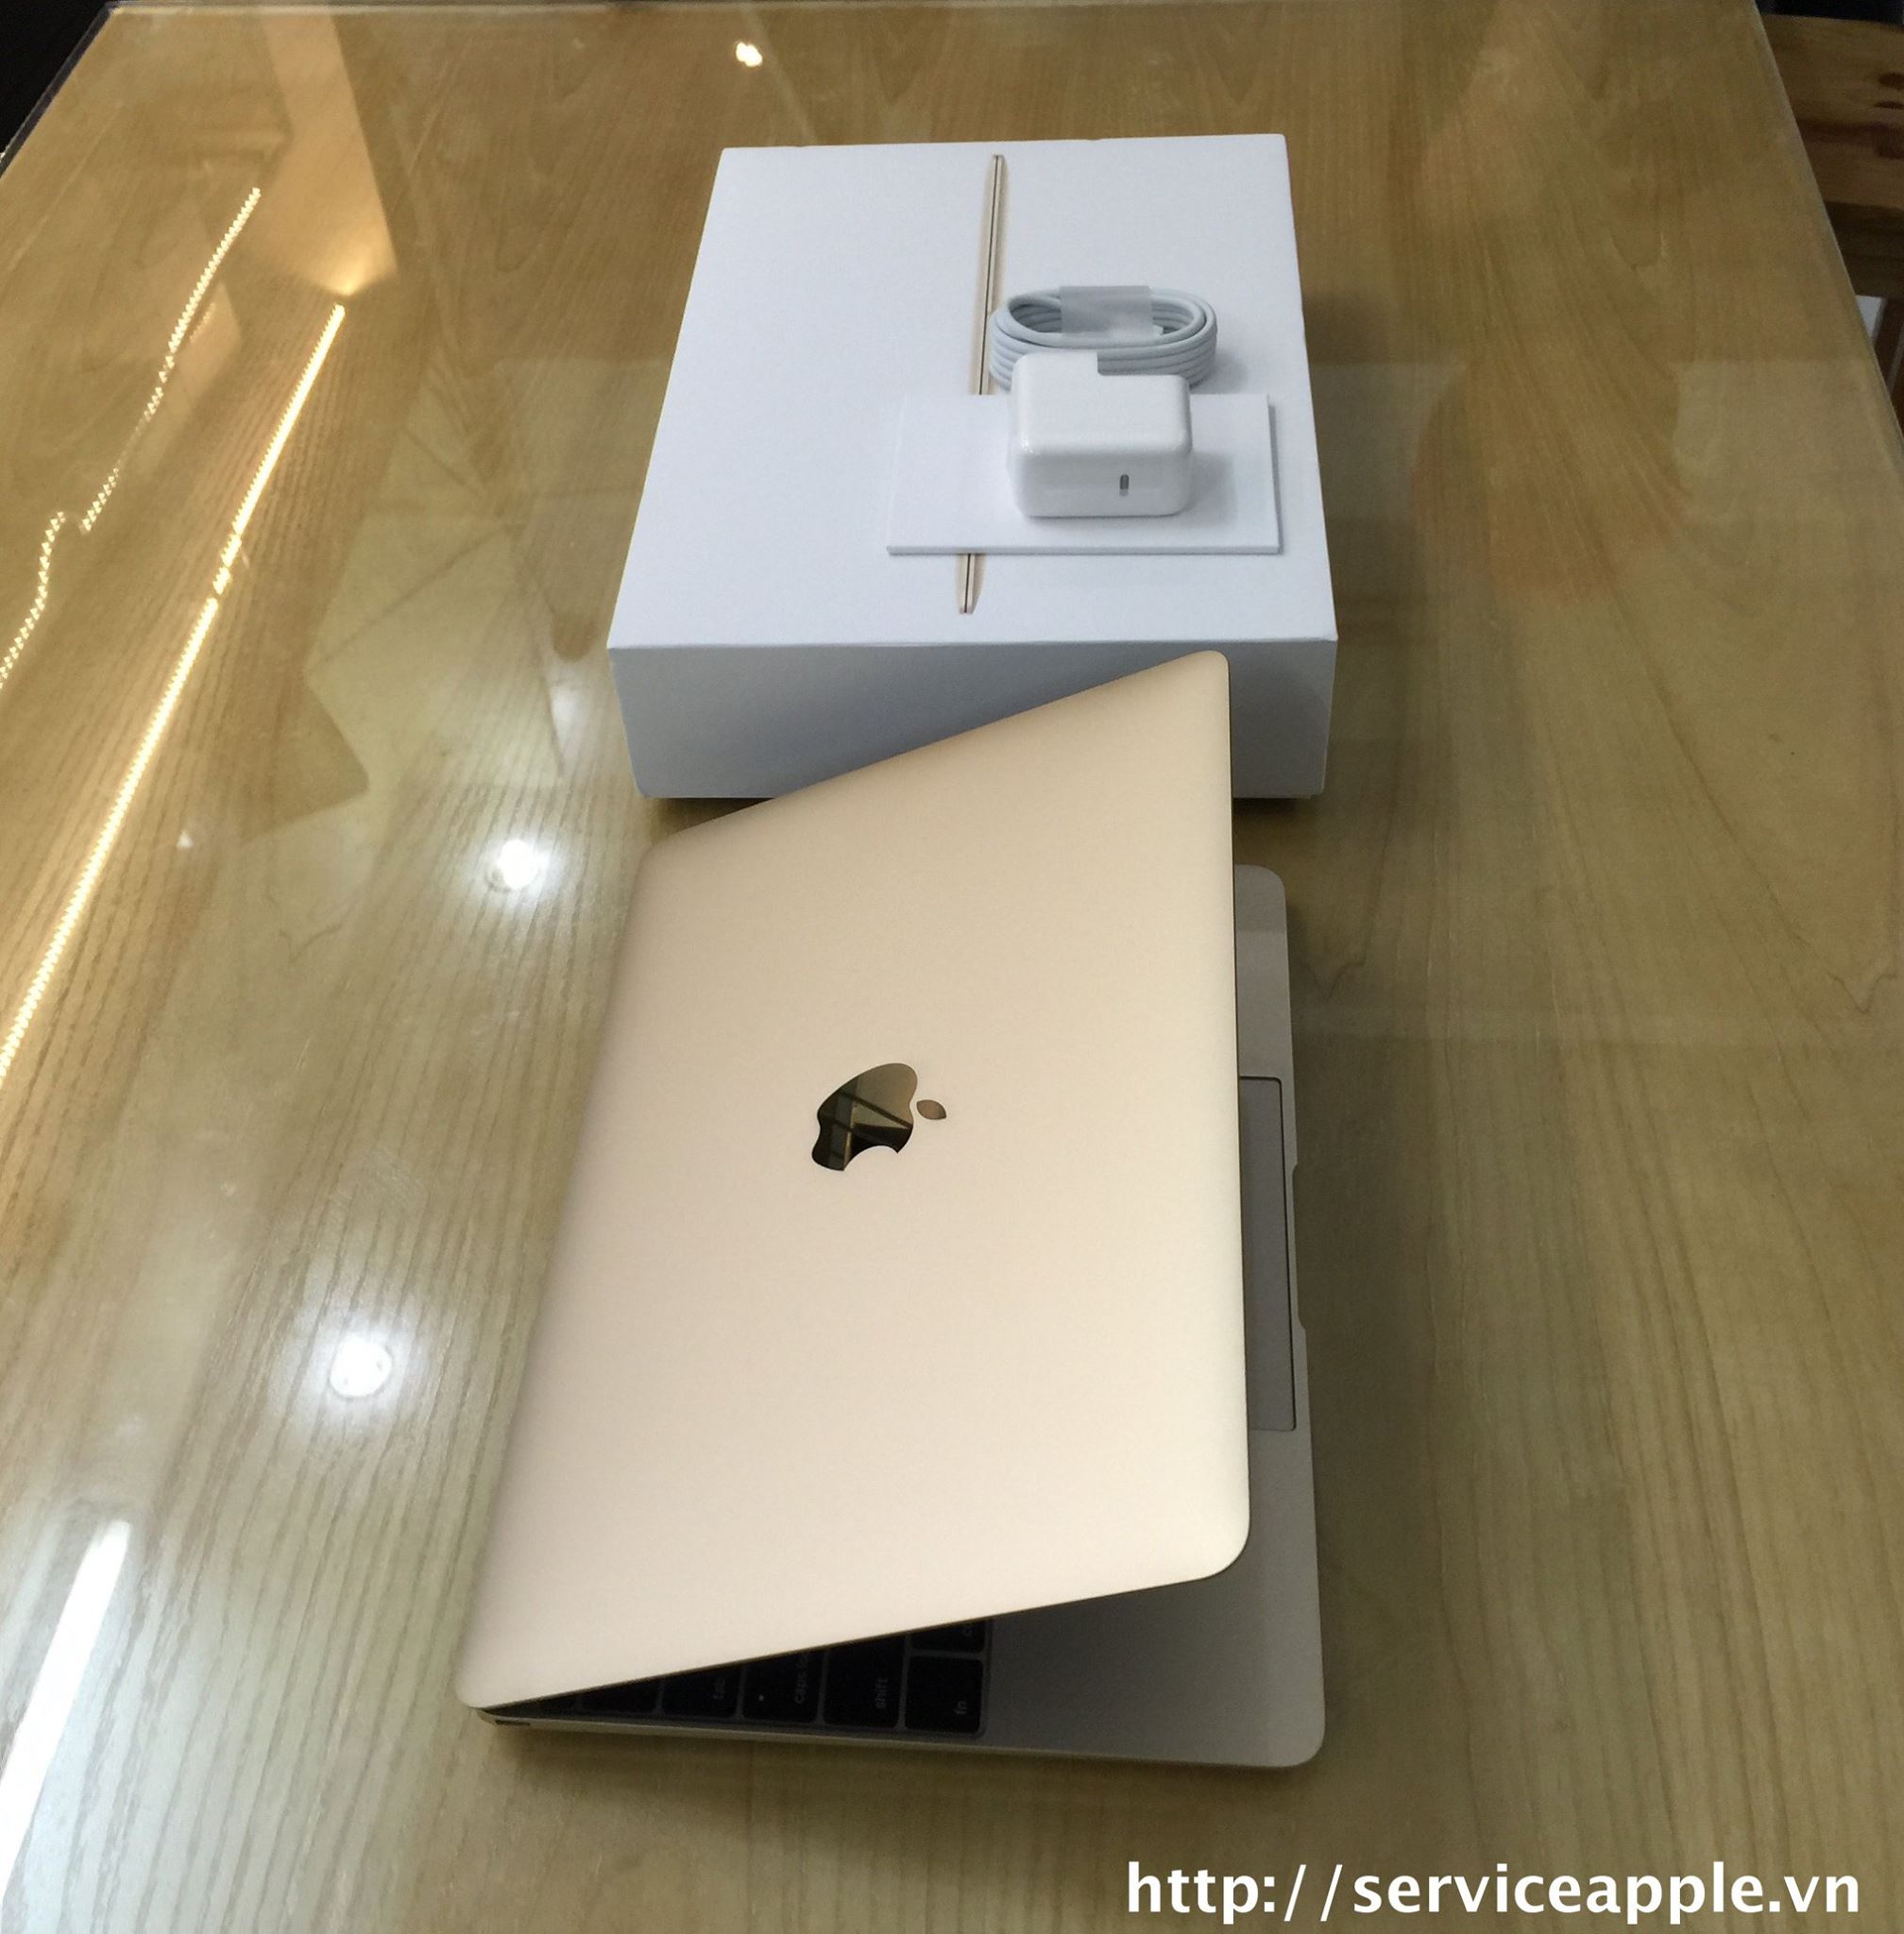 The New MacBook 12 inch GOLD - MK4N2_3.jpg